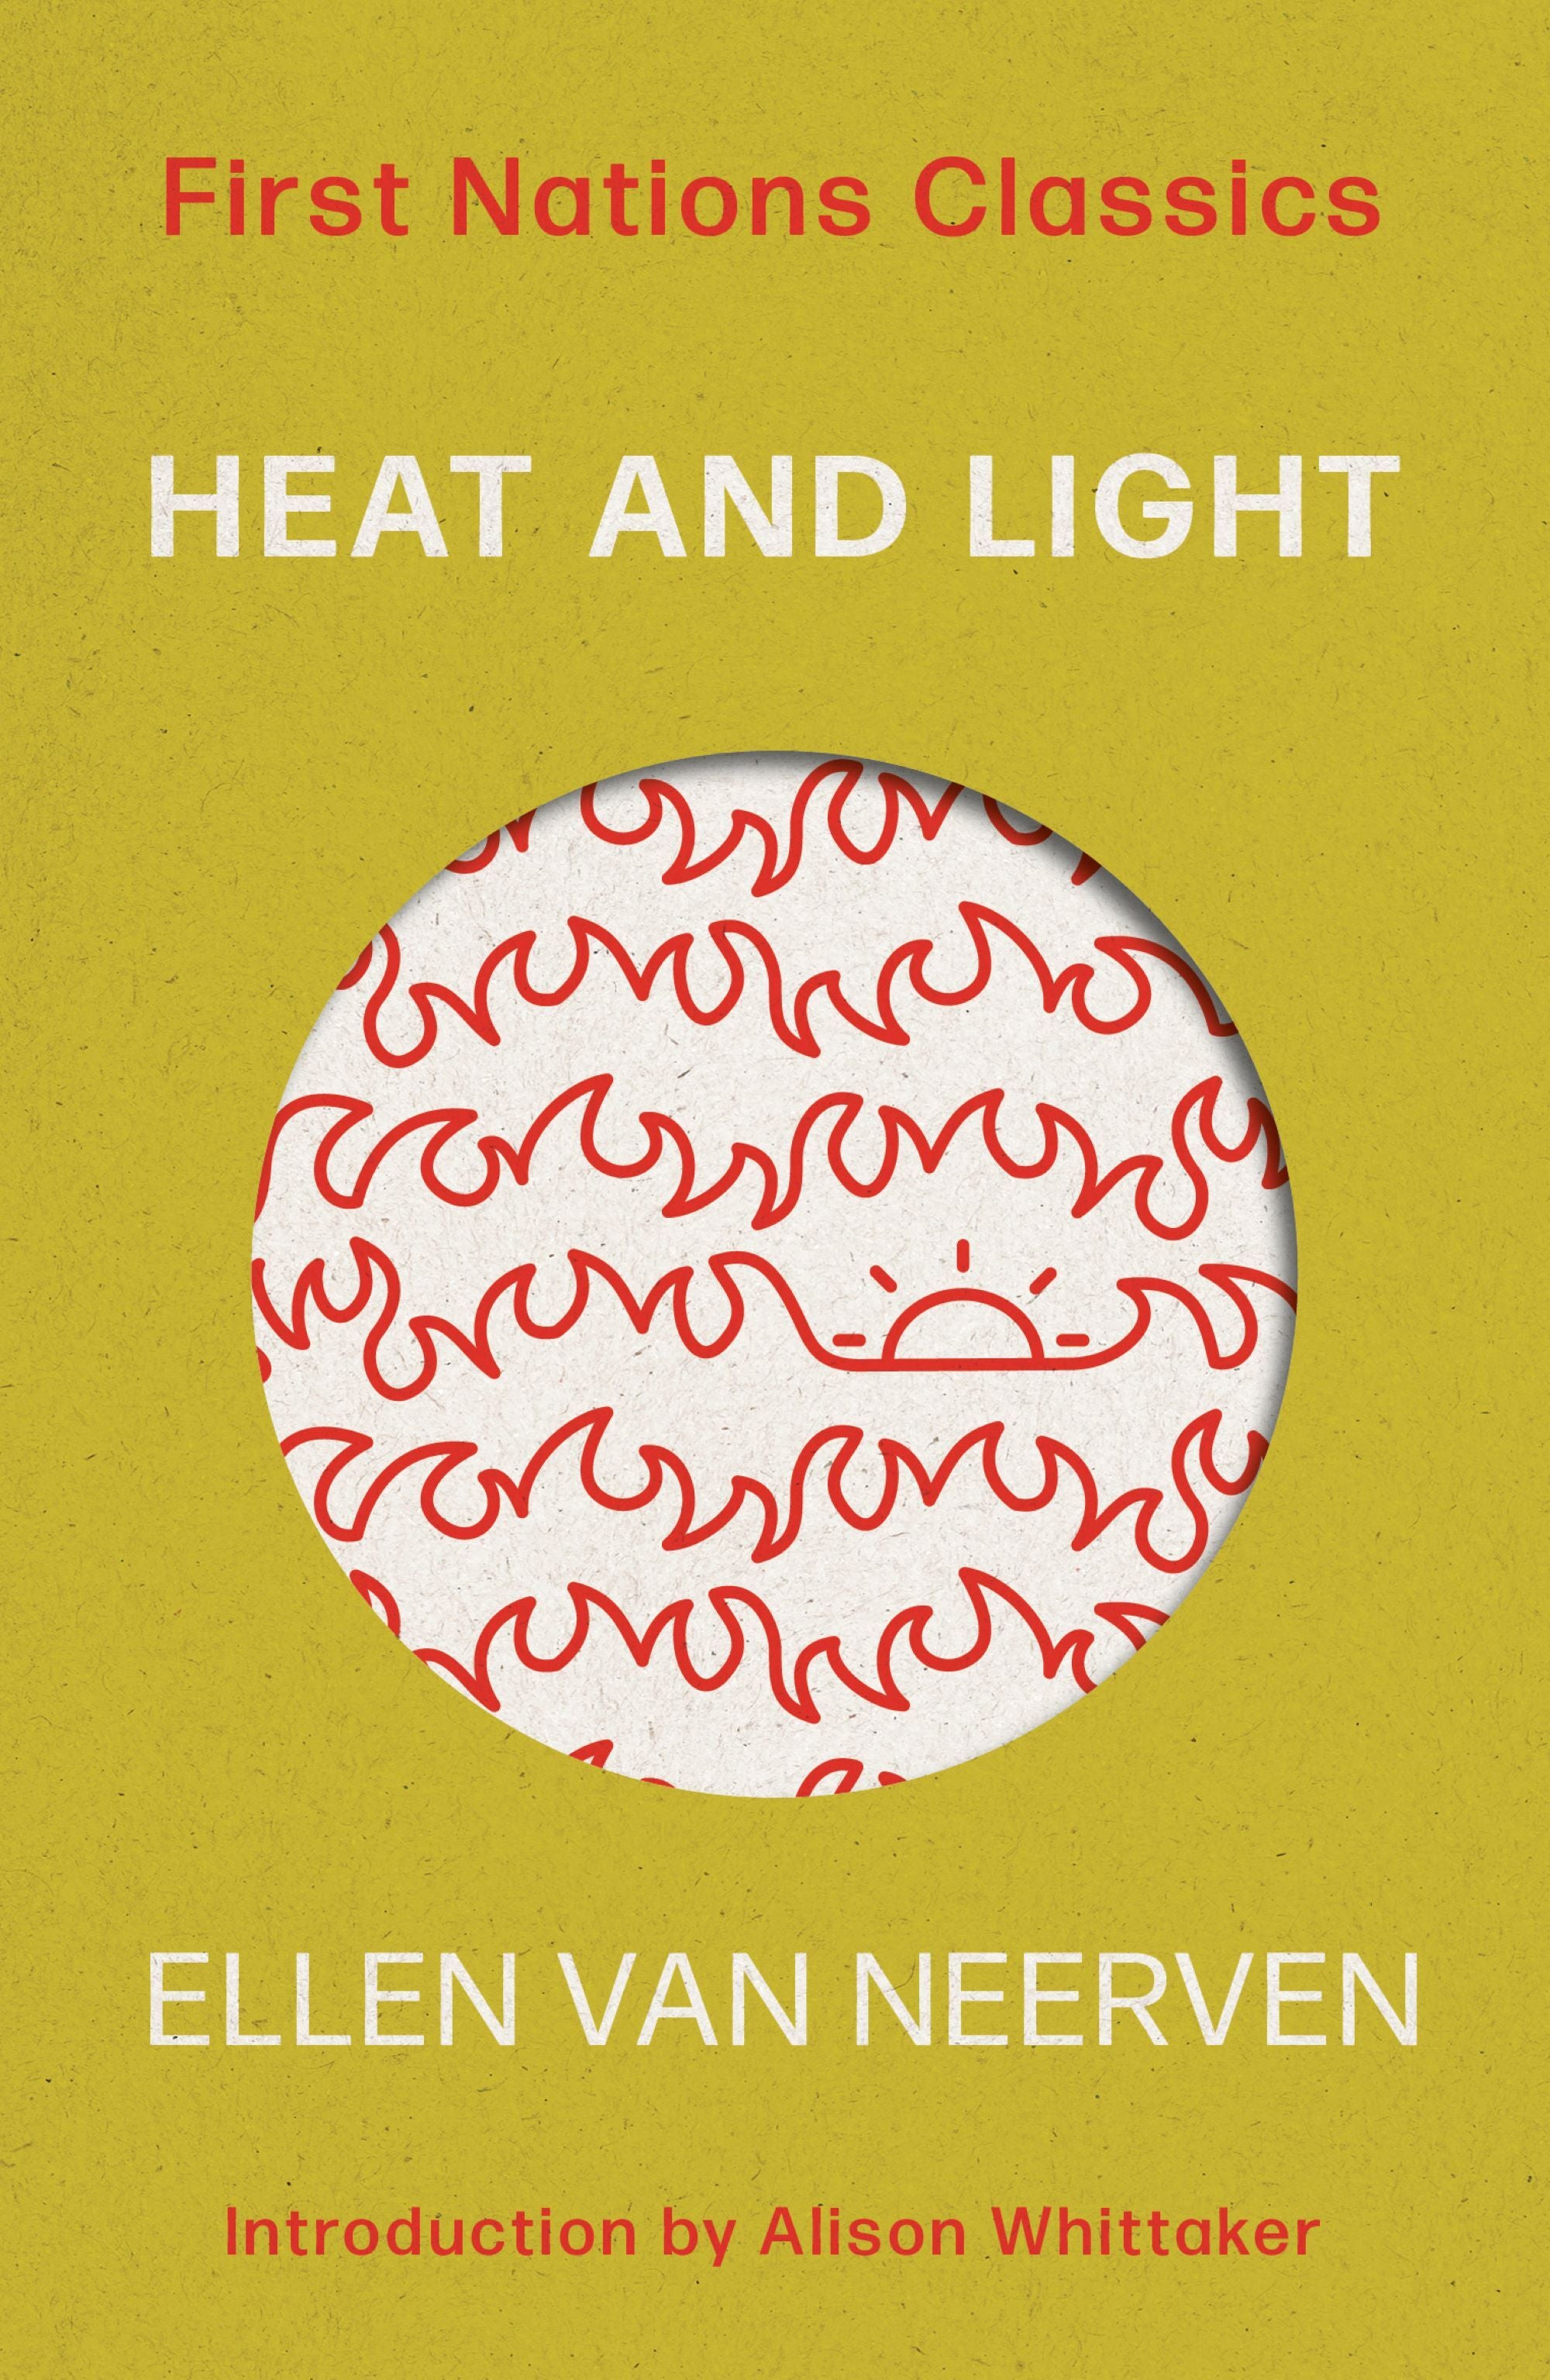 Heat and Light by Ellen Van Neerven: First Nations Classics